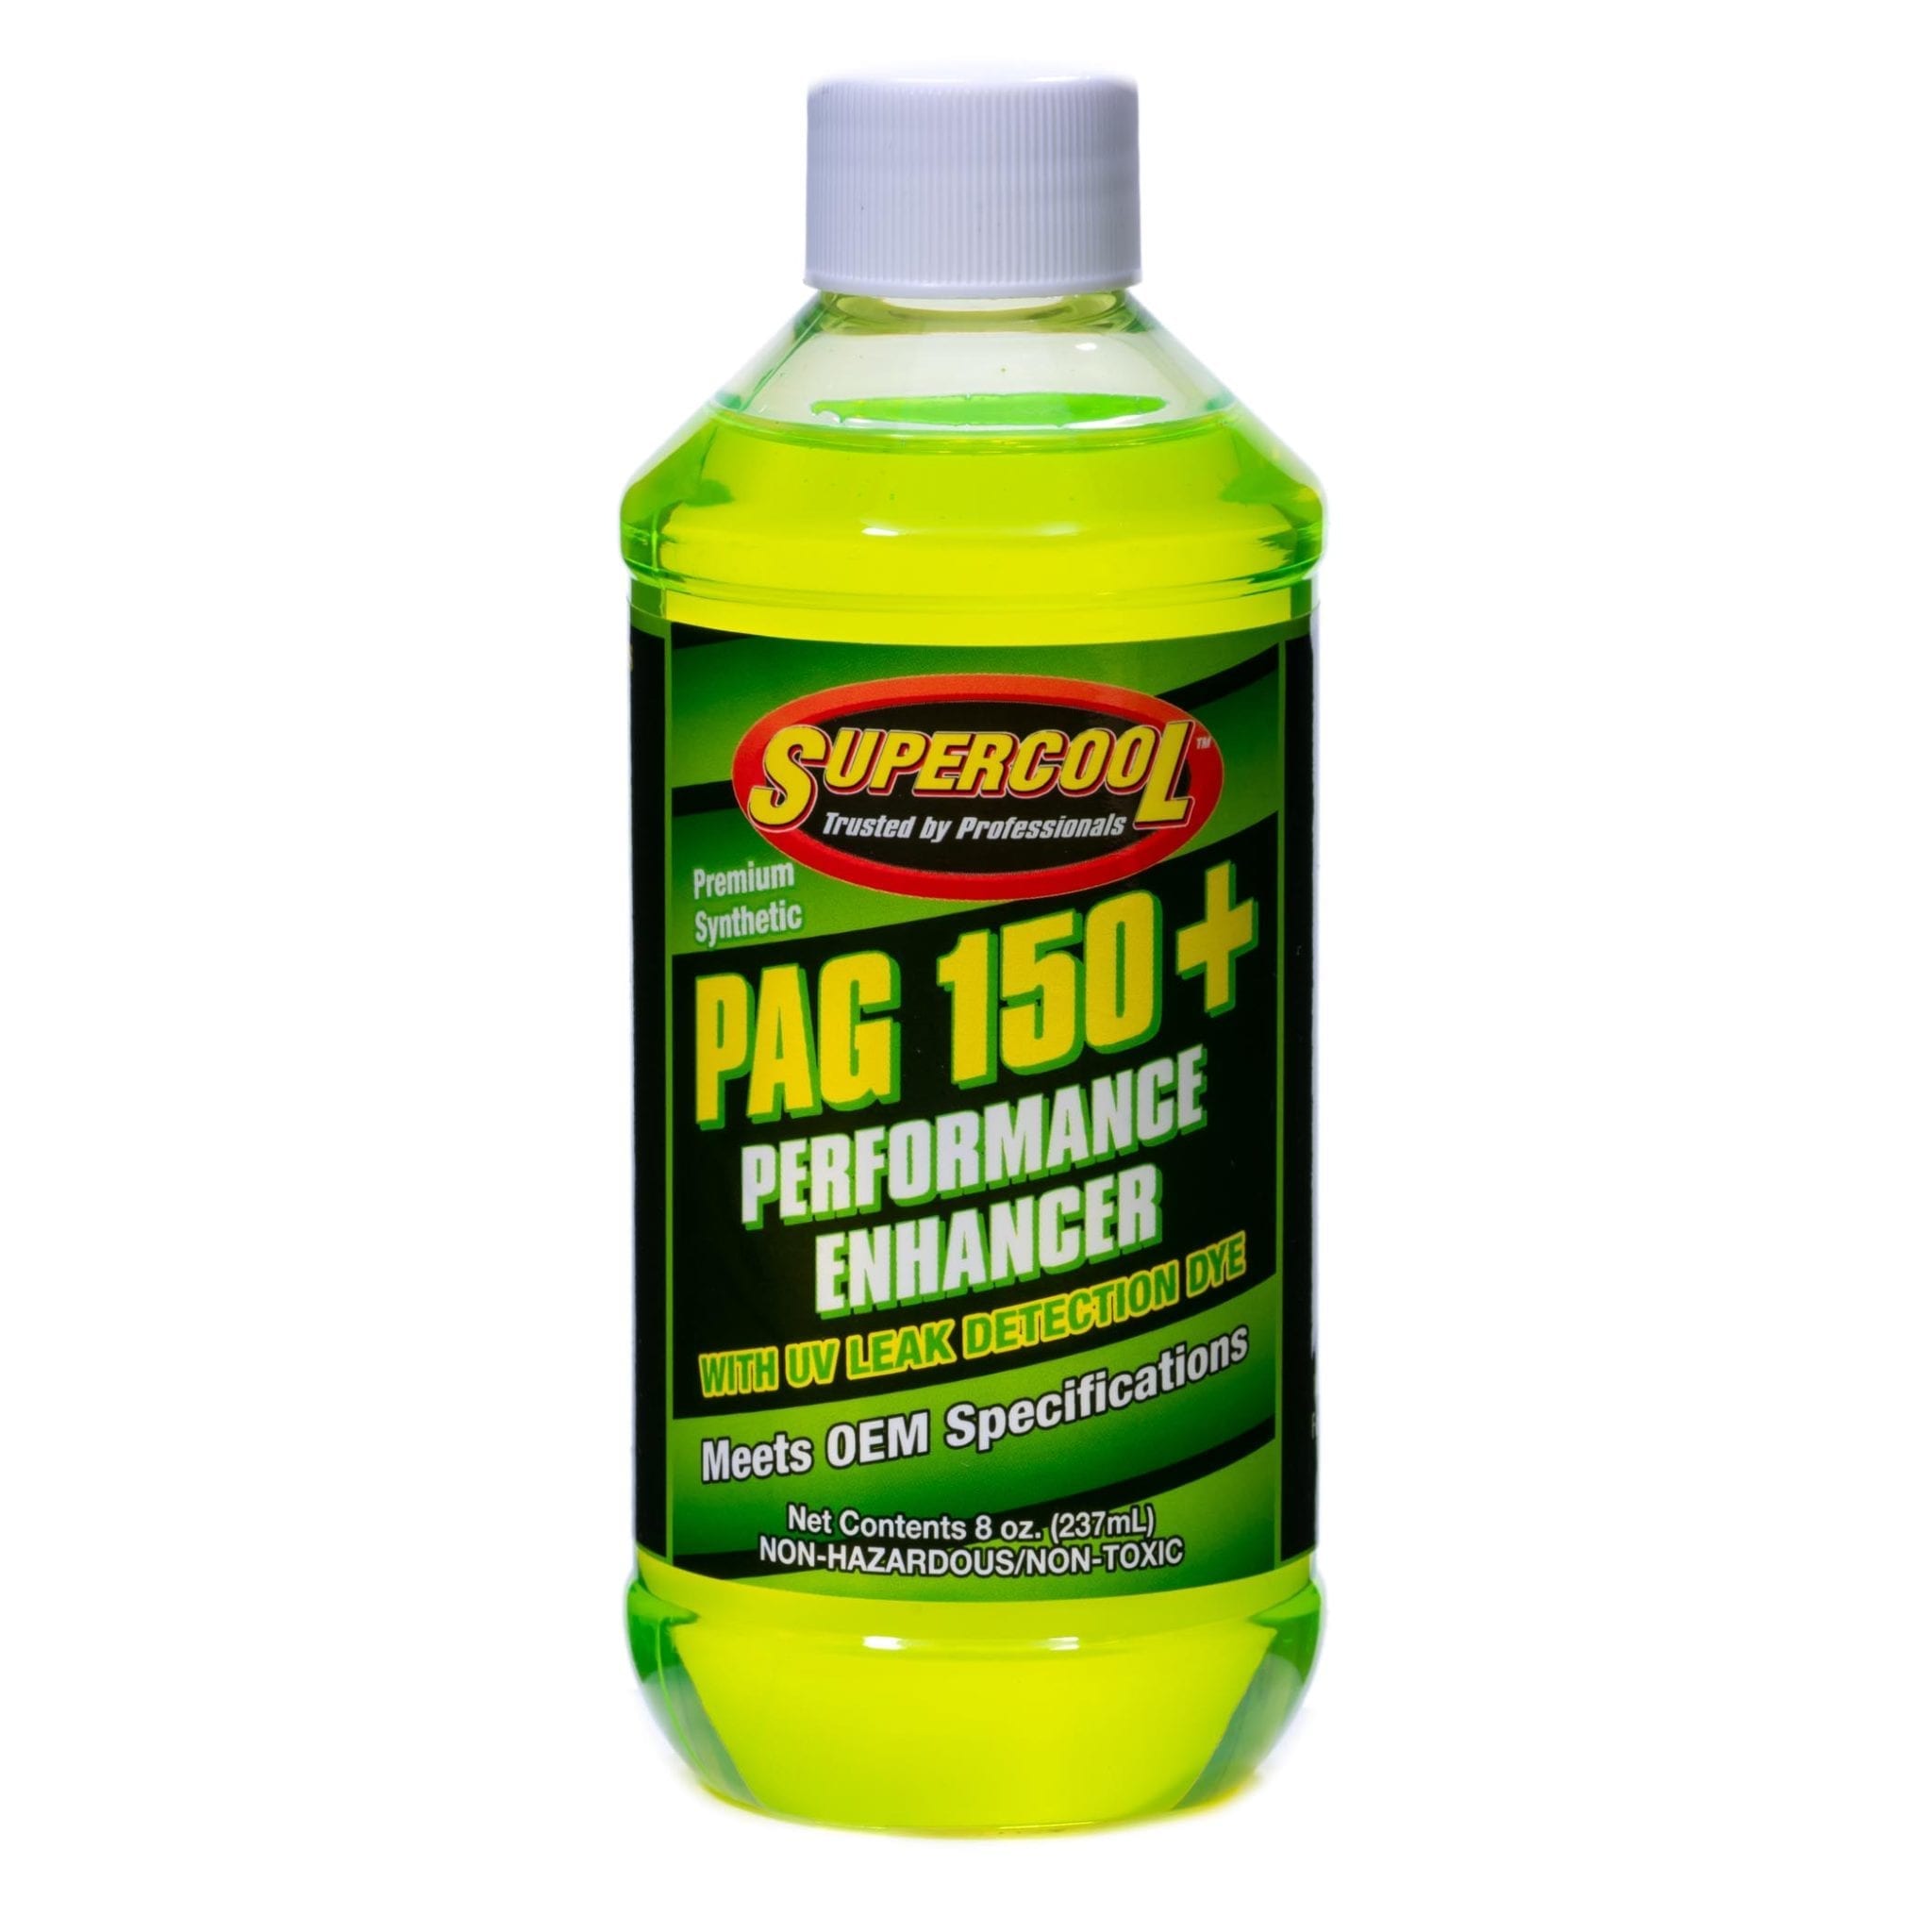 PAG Oil 150 Viscosity com Performance Enhancer & U / V Dye 8oz